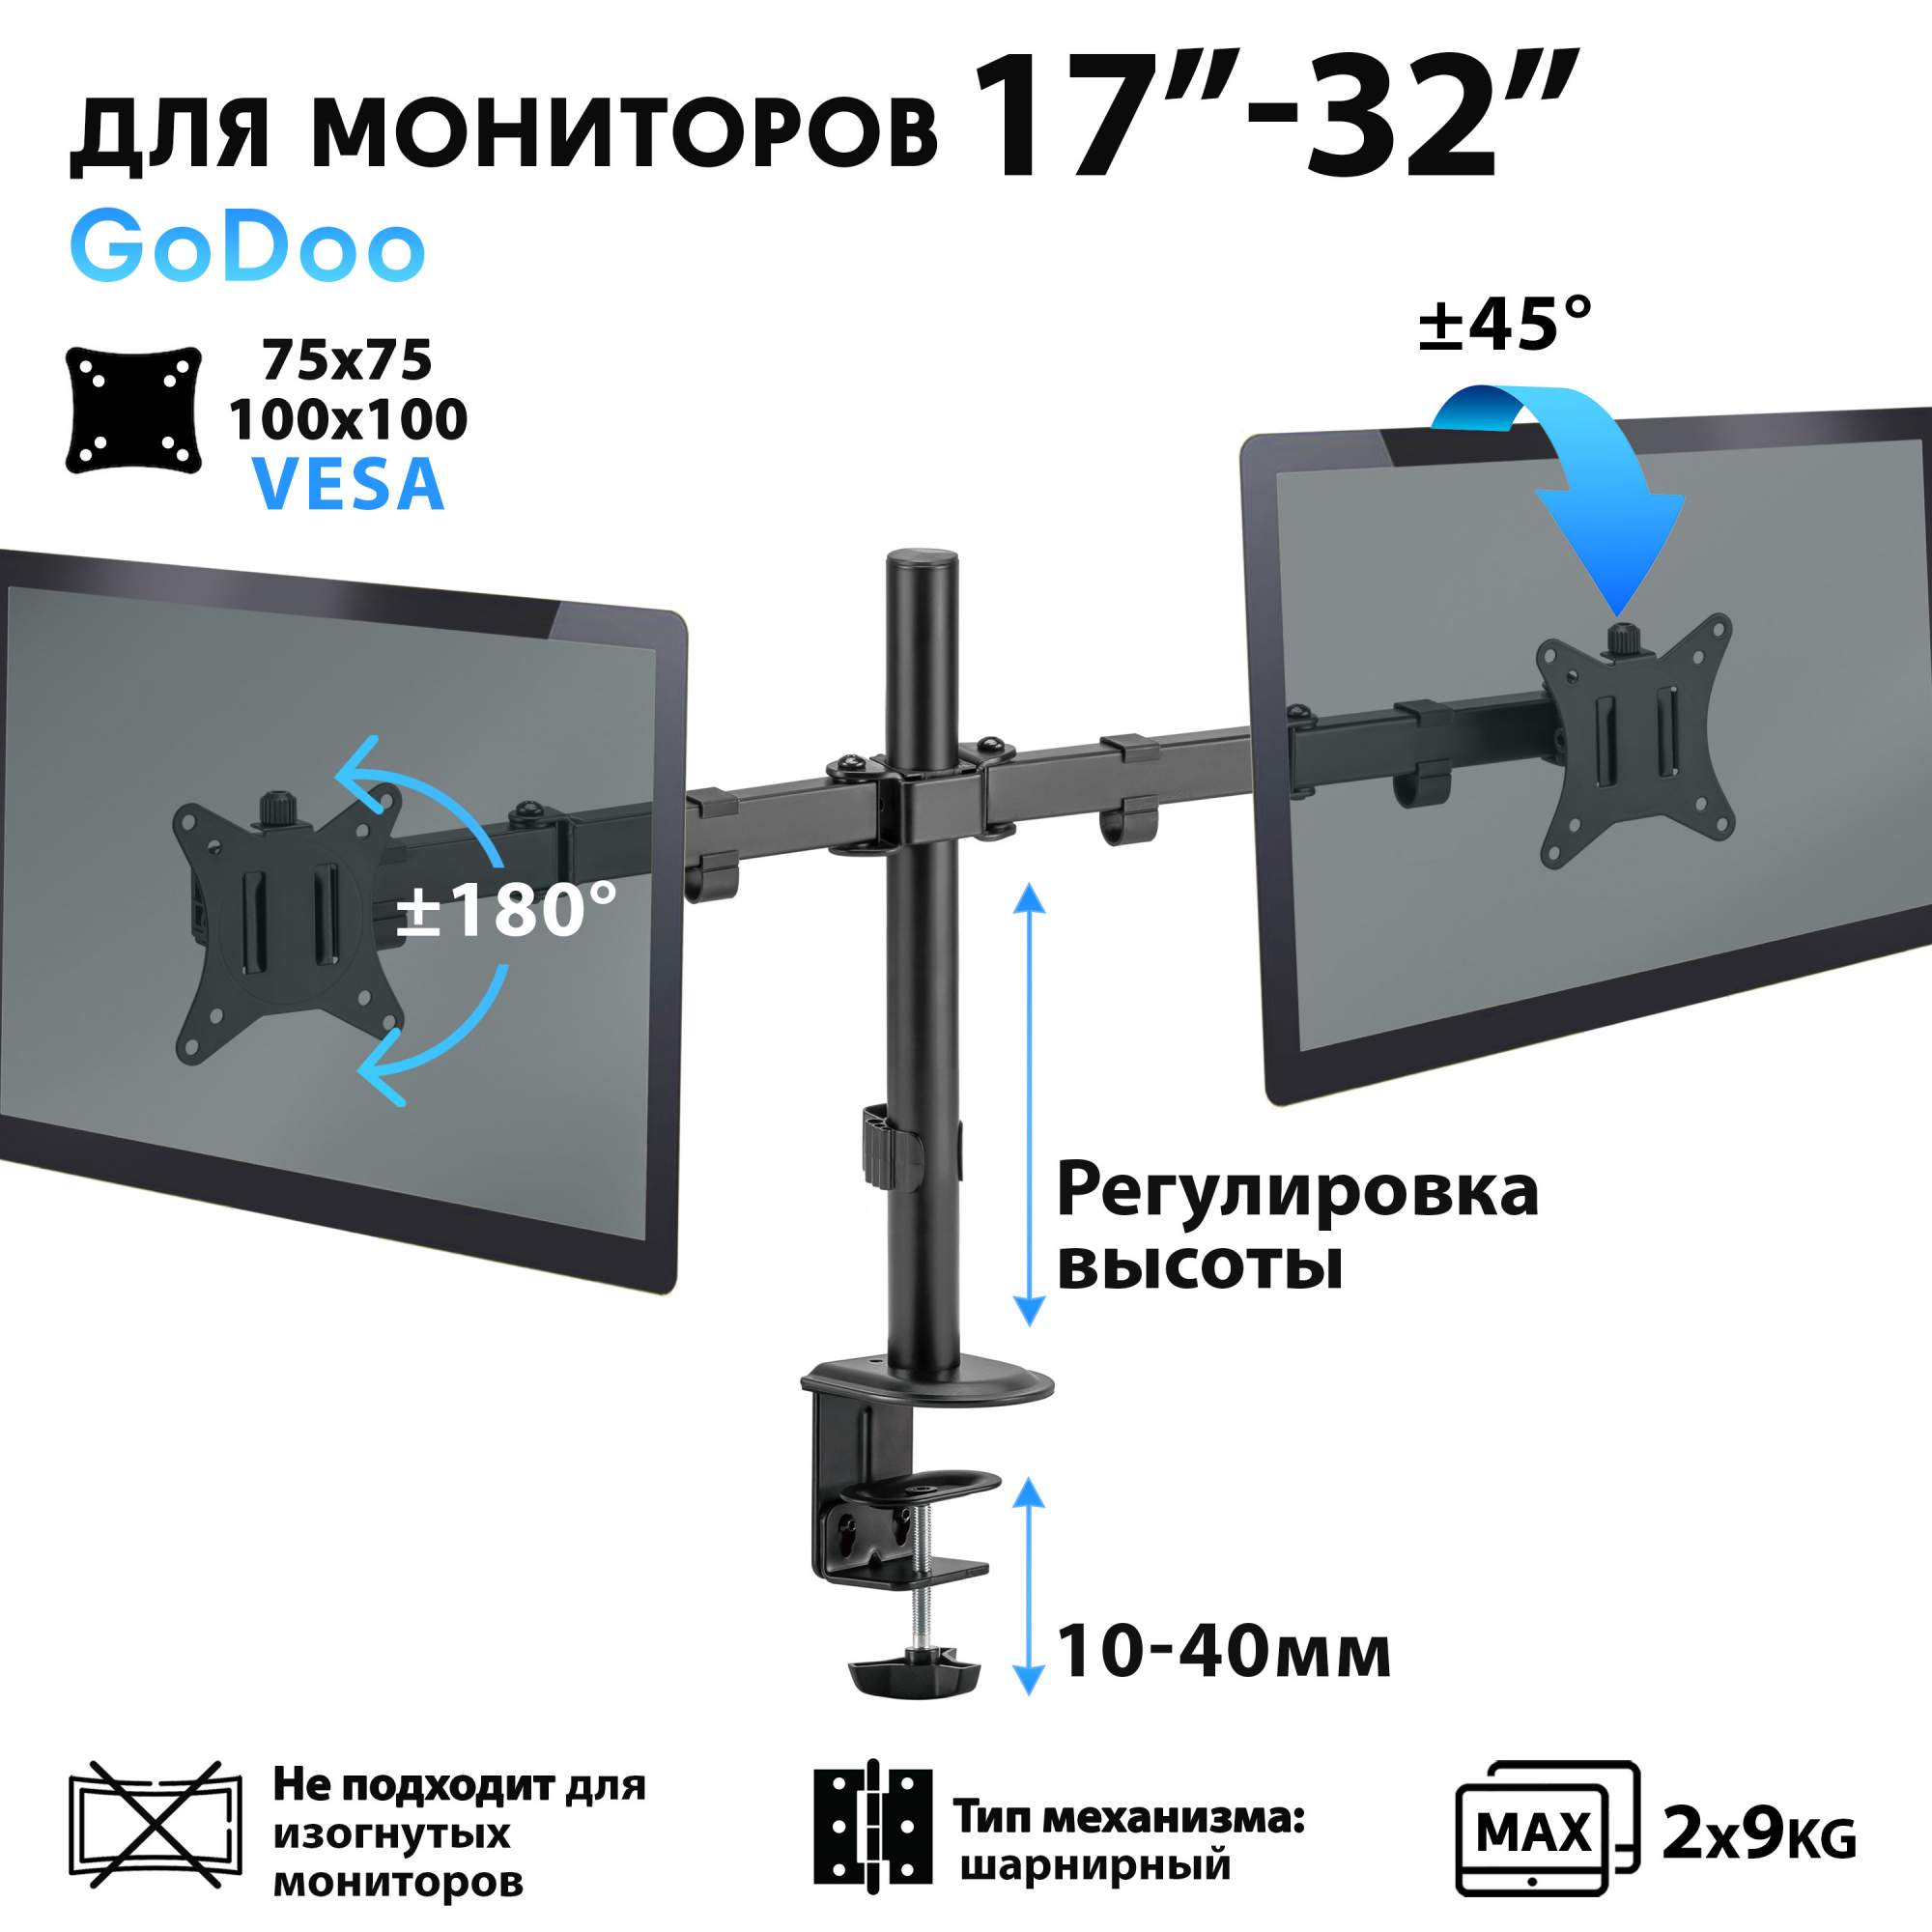 Наклонно-поворотный кронштейн для монитора GoDoo LDT62-C024 17-32 серебристый, купить в Москве, цены в интернет-магазинах на Мегамаркет